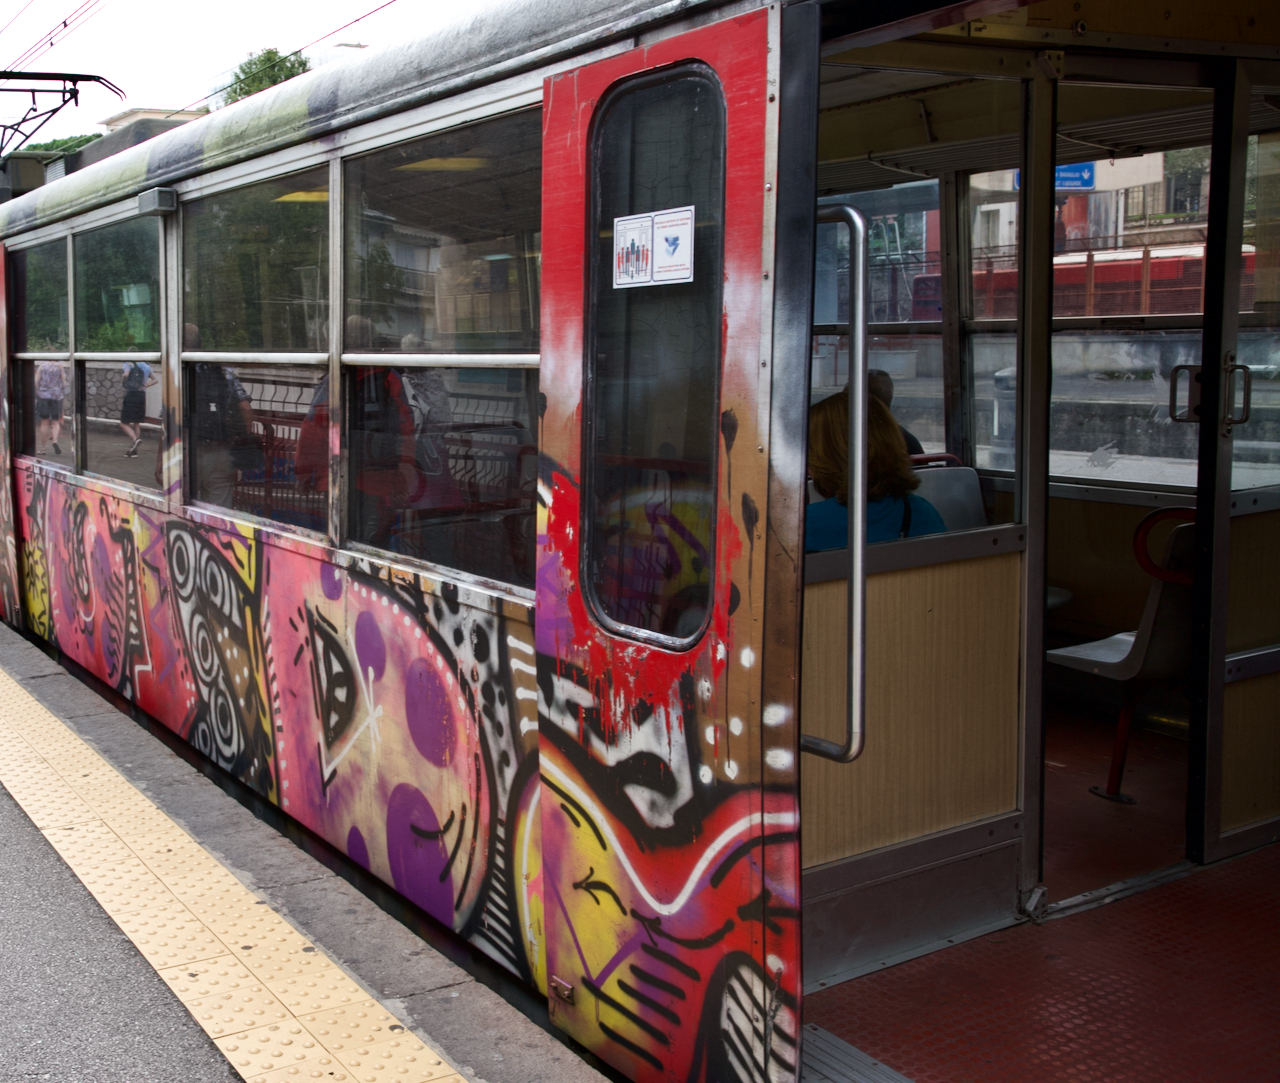 A train car in Europe covered in graffiti.